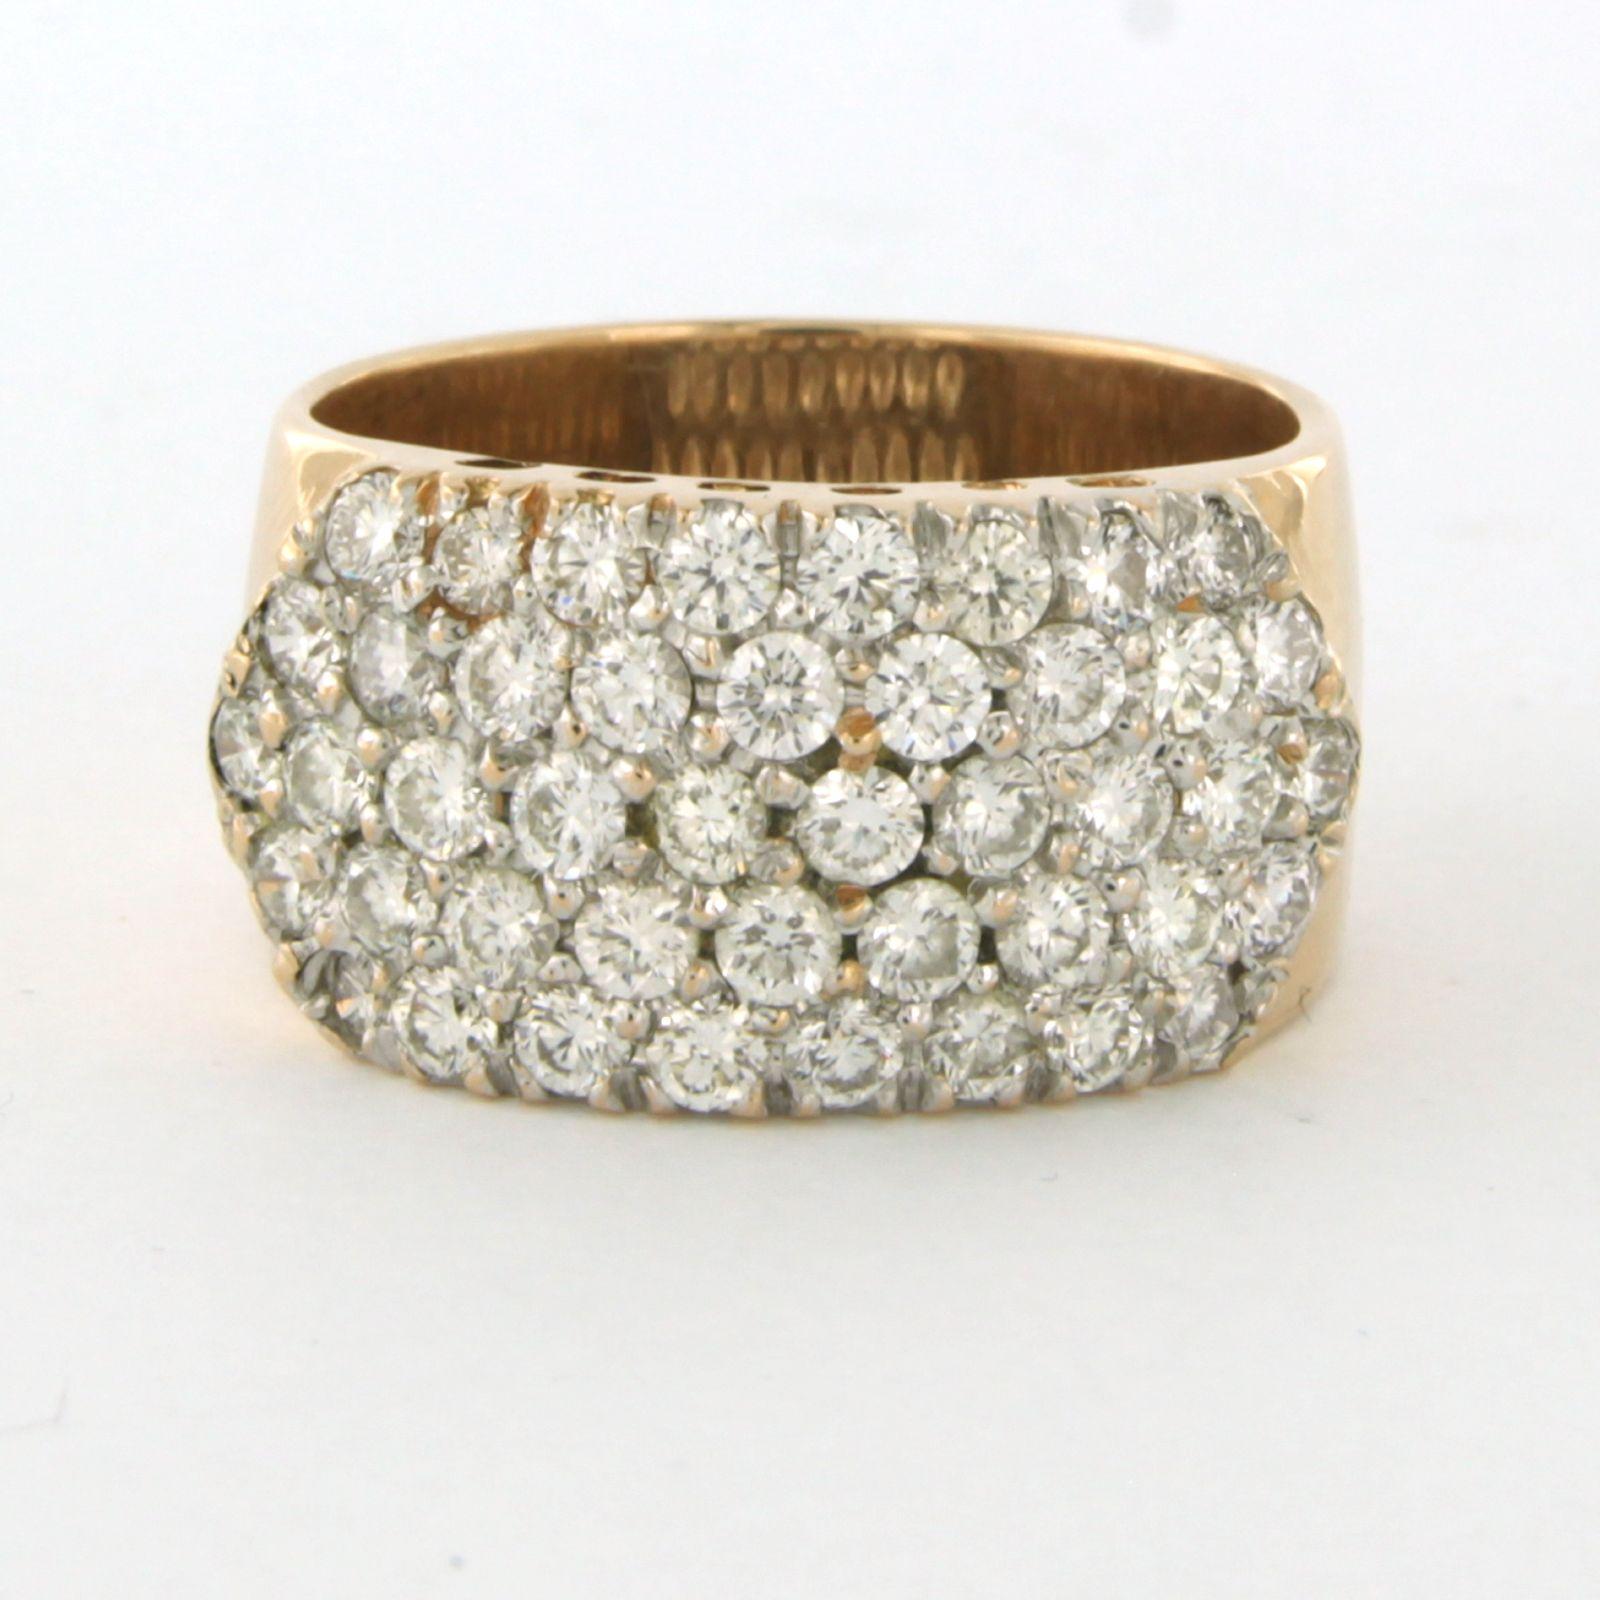 Ring aus 14k Bicolor-Gold, besetzt mit Diamanten im Brillantschliff bis zu . 2,64ct - G/H - VS/SI - Ringgröße U.S. 9 - EU. 19(60)

Ausführliche Beschreibung

die Oberseite des Rings ist 1,2 cm breit

Ringgröße US 9 - EU. 19(60), Ring kann zum